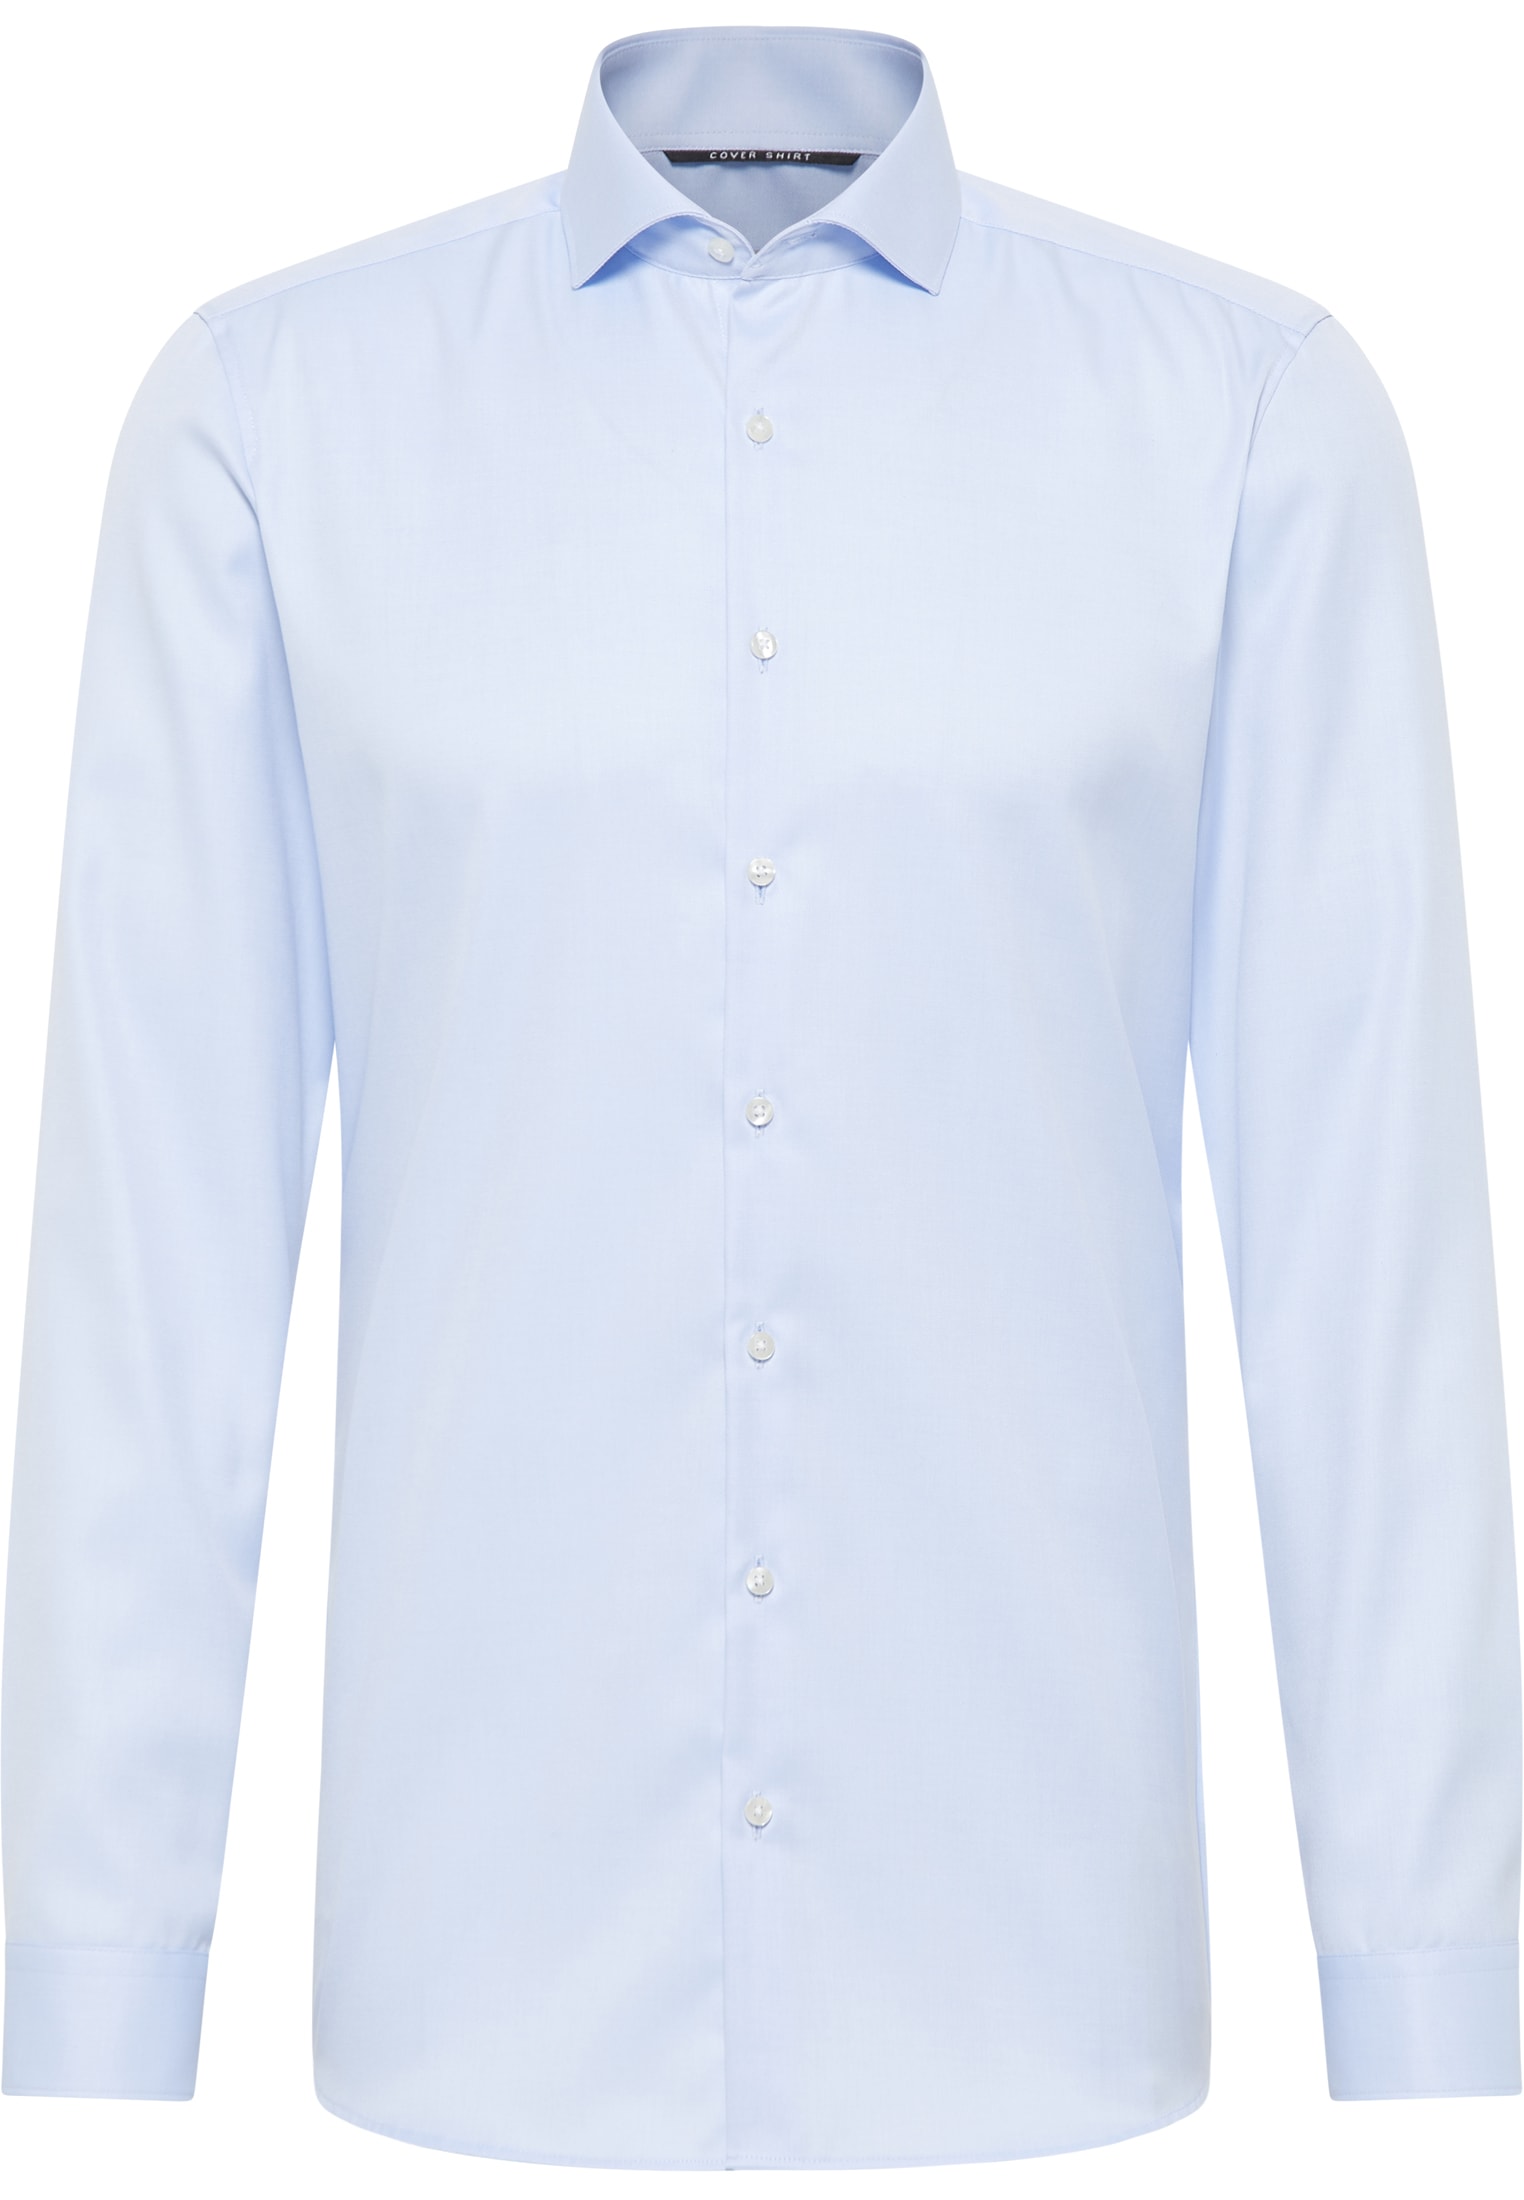 SUPER SLIM Cover Shirt in light blue plain